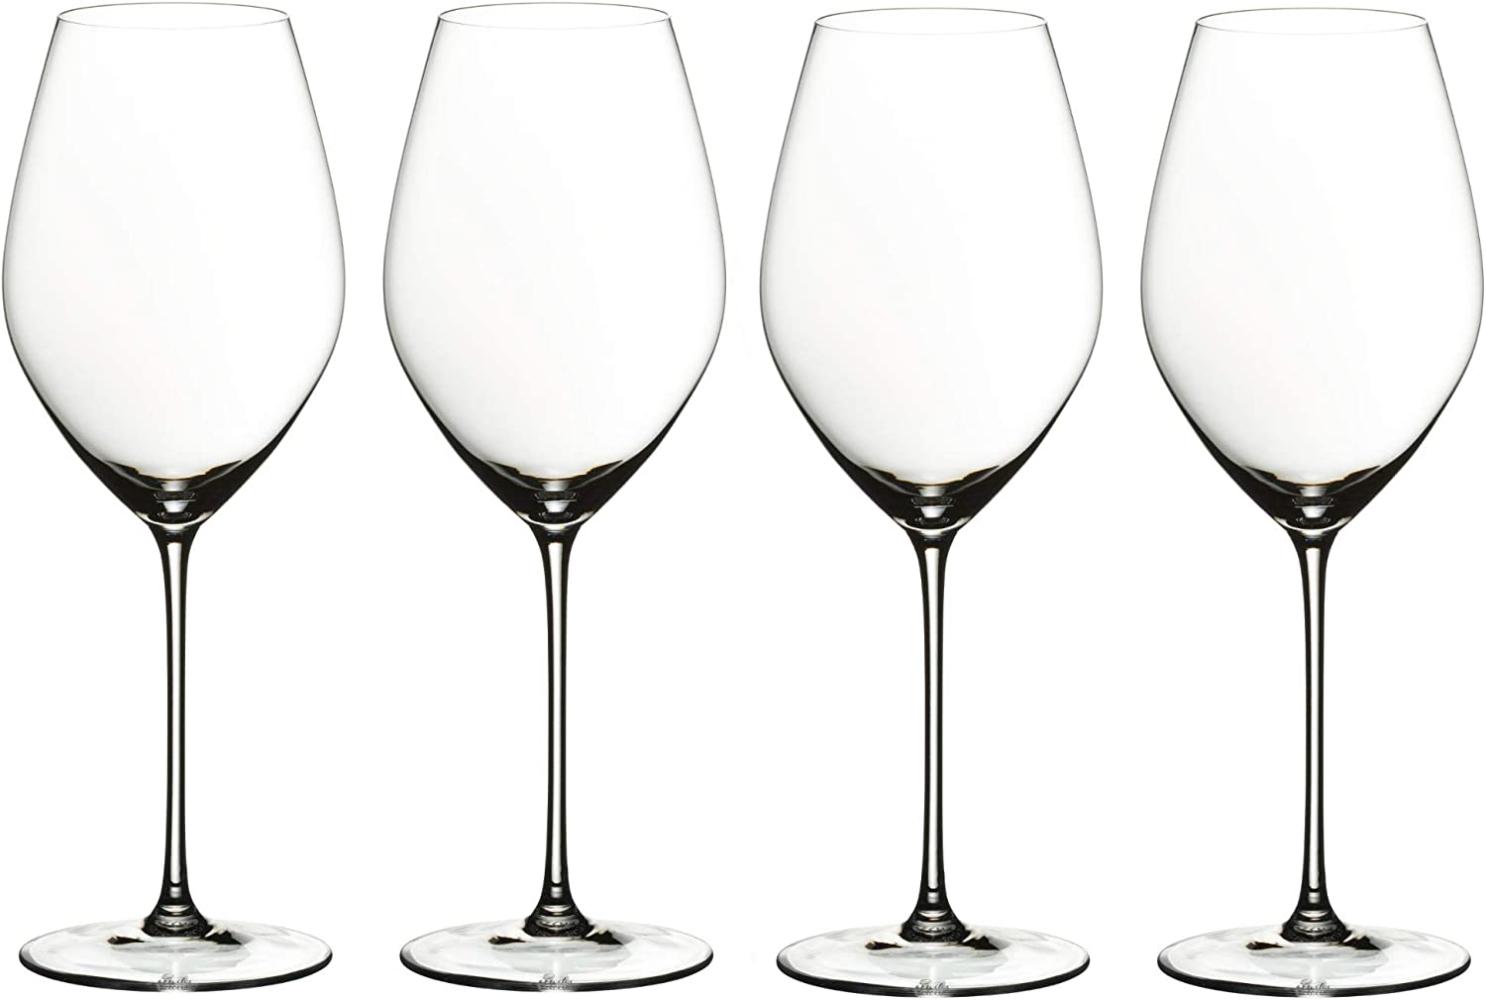 Riedel Veritas Champagne Wine Glass, 2er Set, Weinglas, Weißweinglas, Trinkglas, Hochwertiges Glas, 445 ml, 6449/28 Bild 1